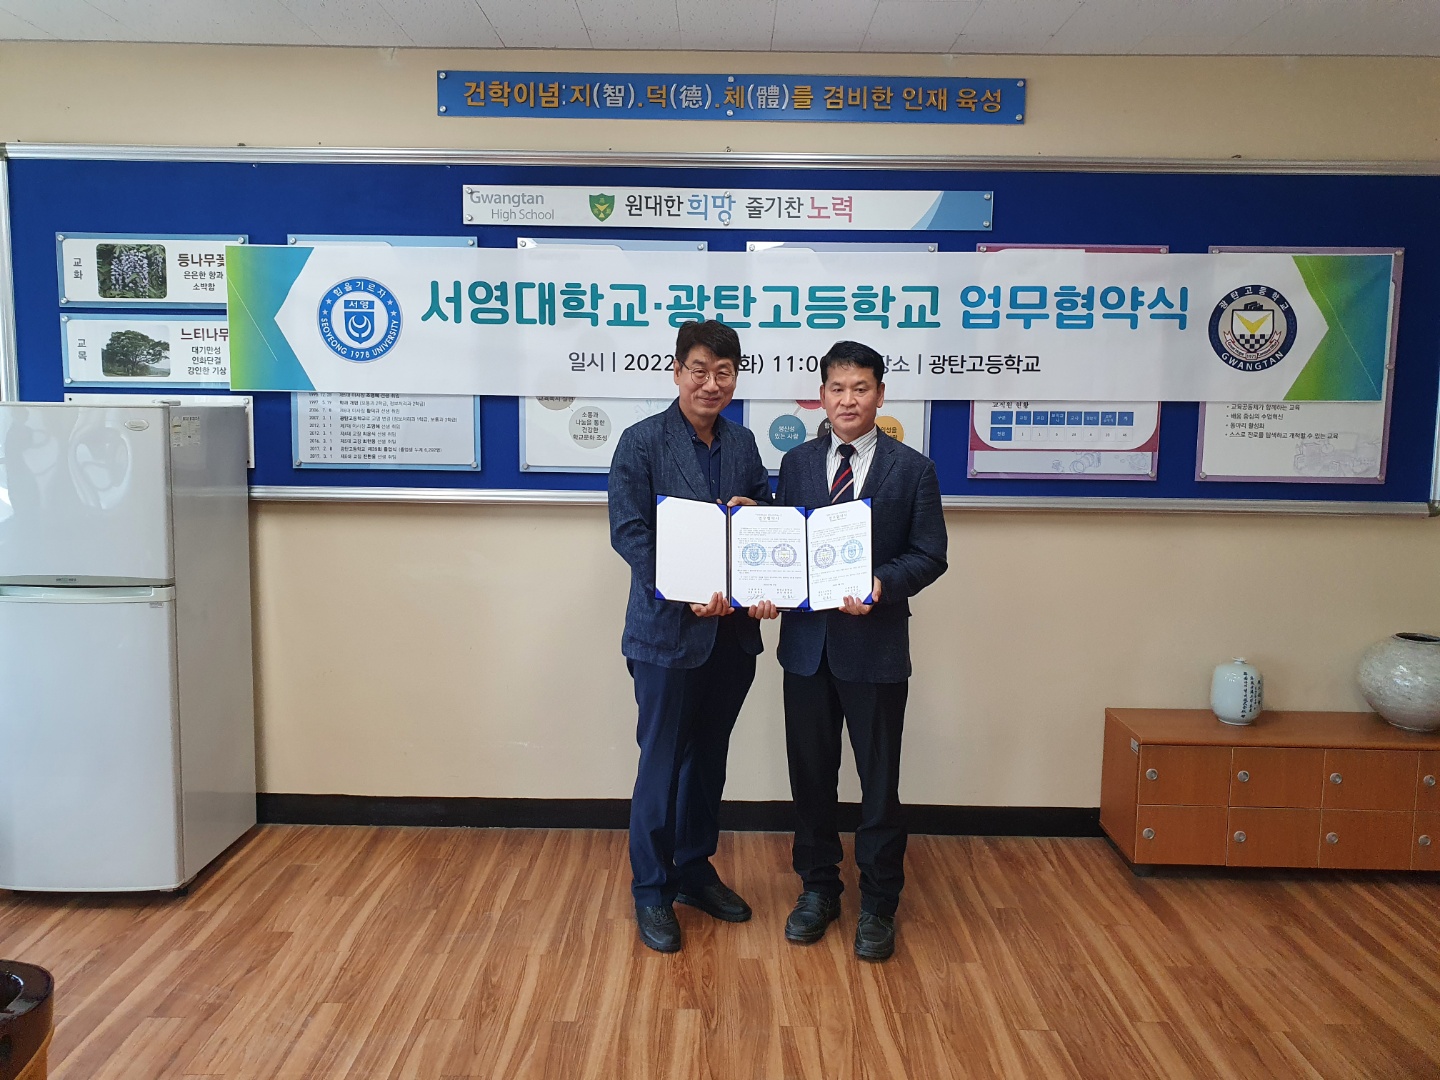 서영대학교-광탄고등학교 와 업무협약 체결 상세정보 페이지로 이동하기